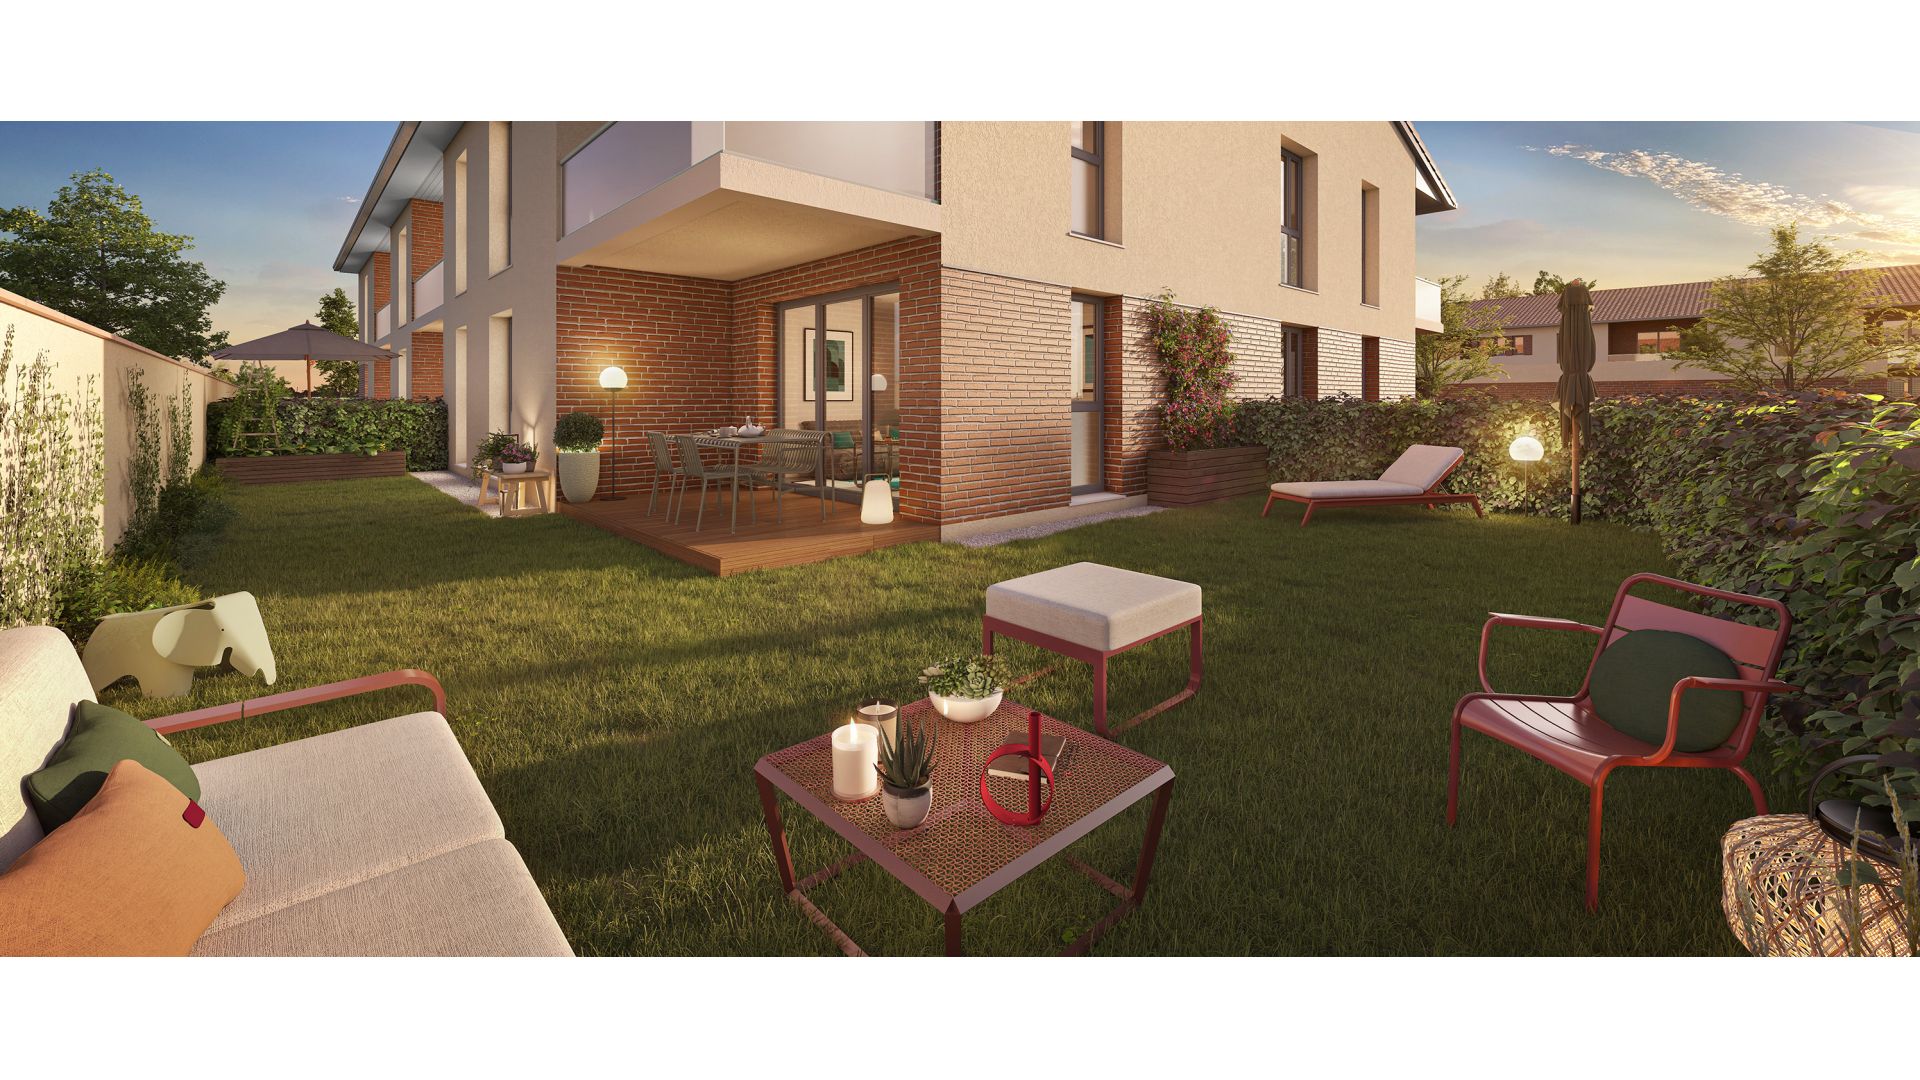 Greencity immobilier - achat appartements neufs du T2 au T3 - Résidence Le Castellan - 31620 Labastide-Saint-Sernin